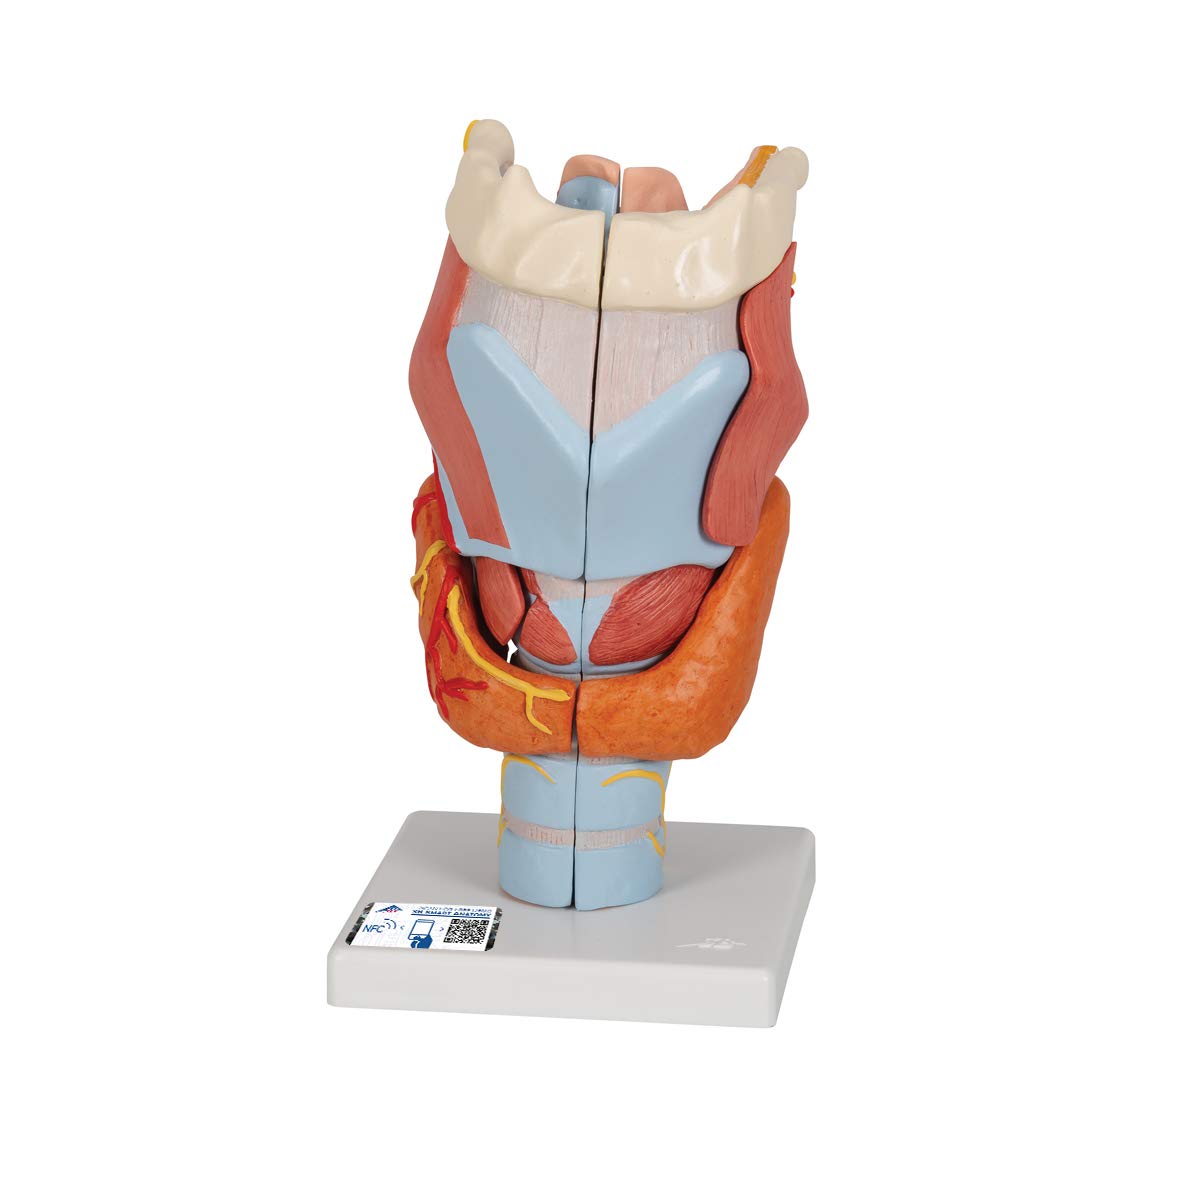 3B Scientific Menschliche Anatomie - Kehlkopfmodell, 2-fache Größe, 7-teilig + kostenlose Anatomie App - 3B Smart Anatomy, G21